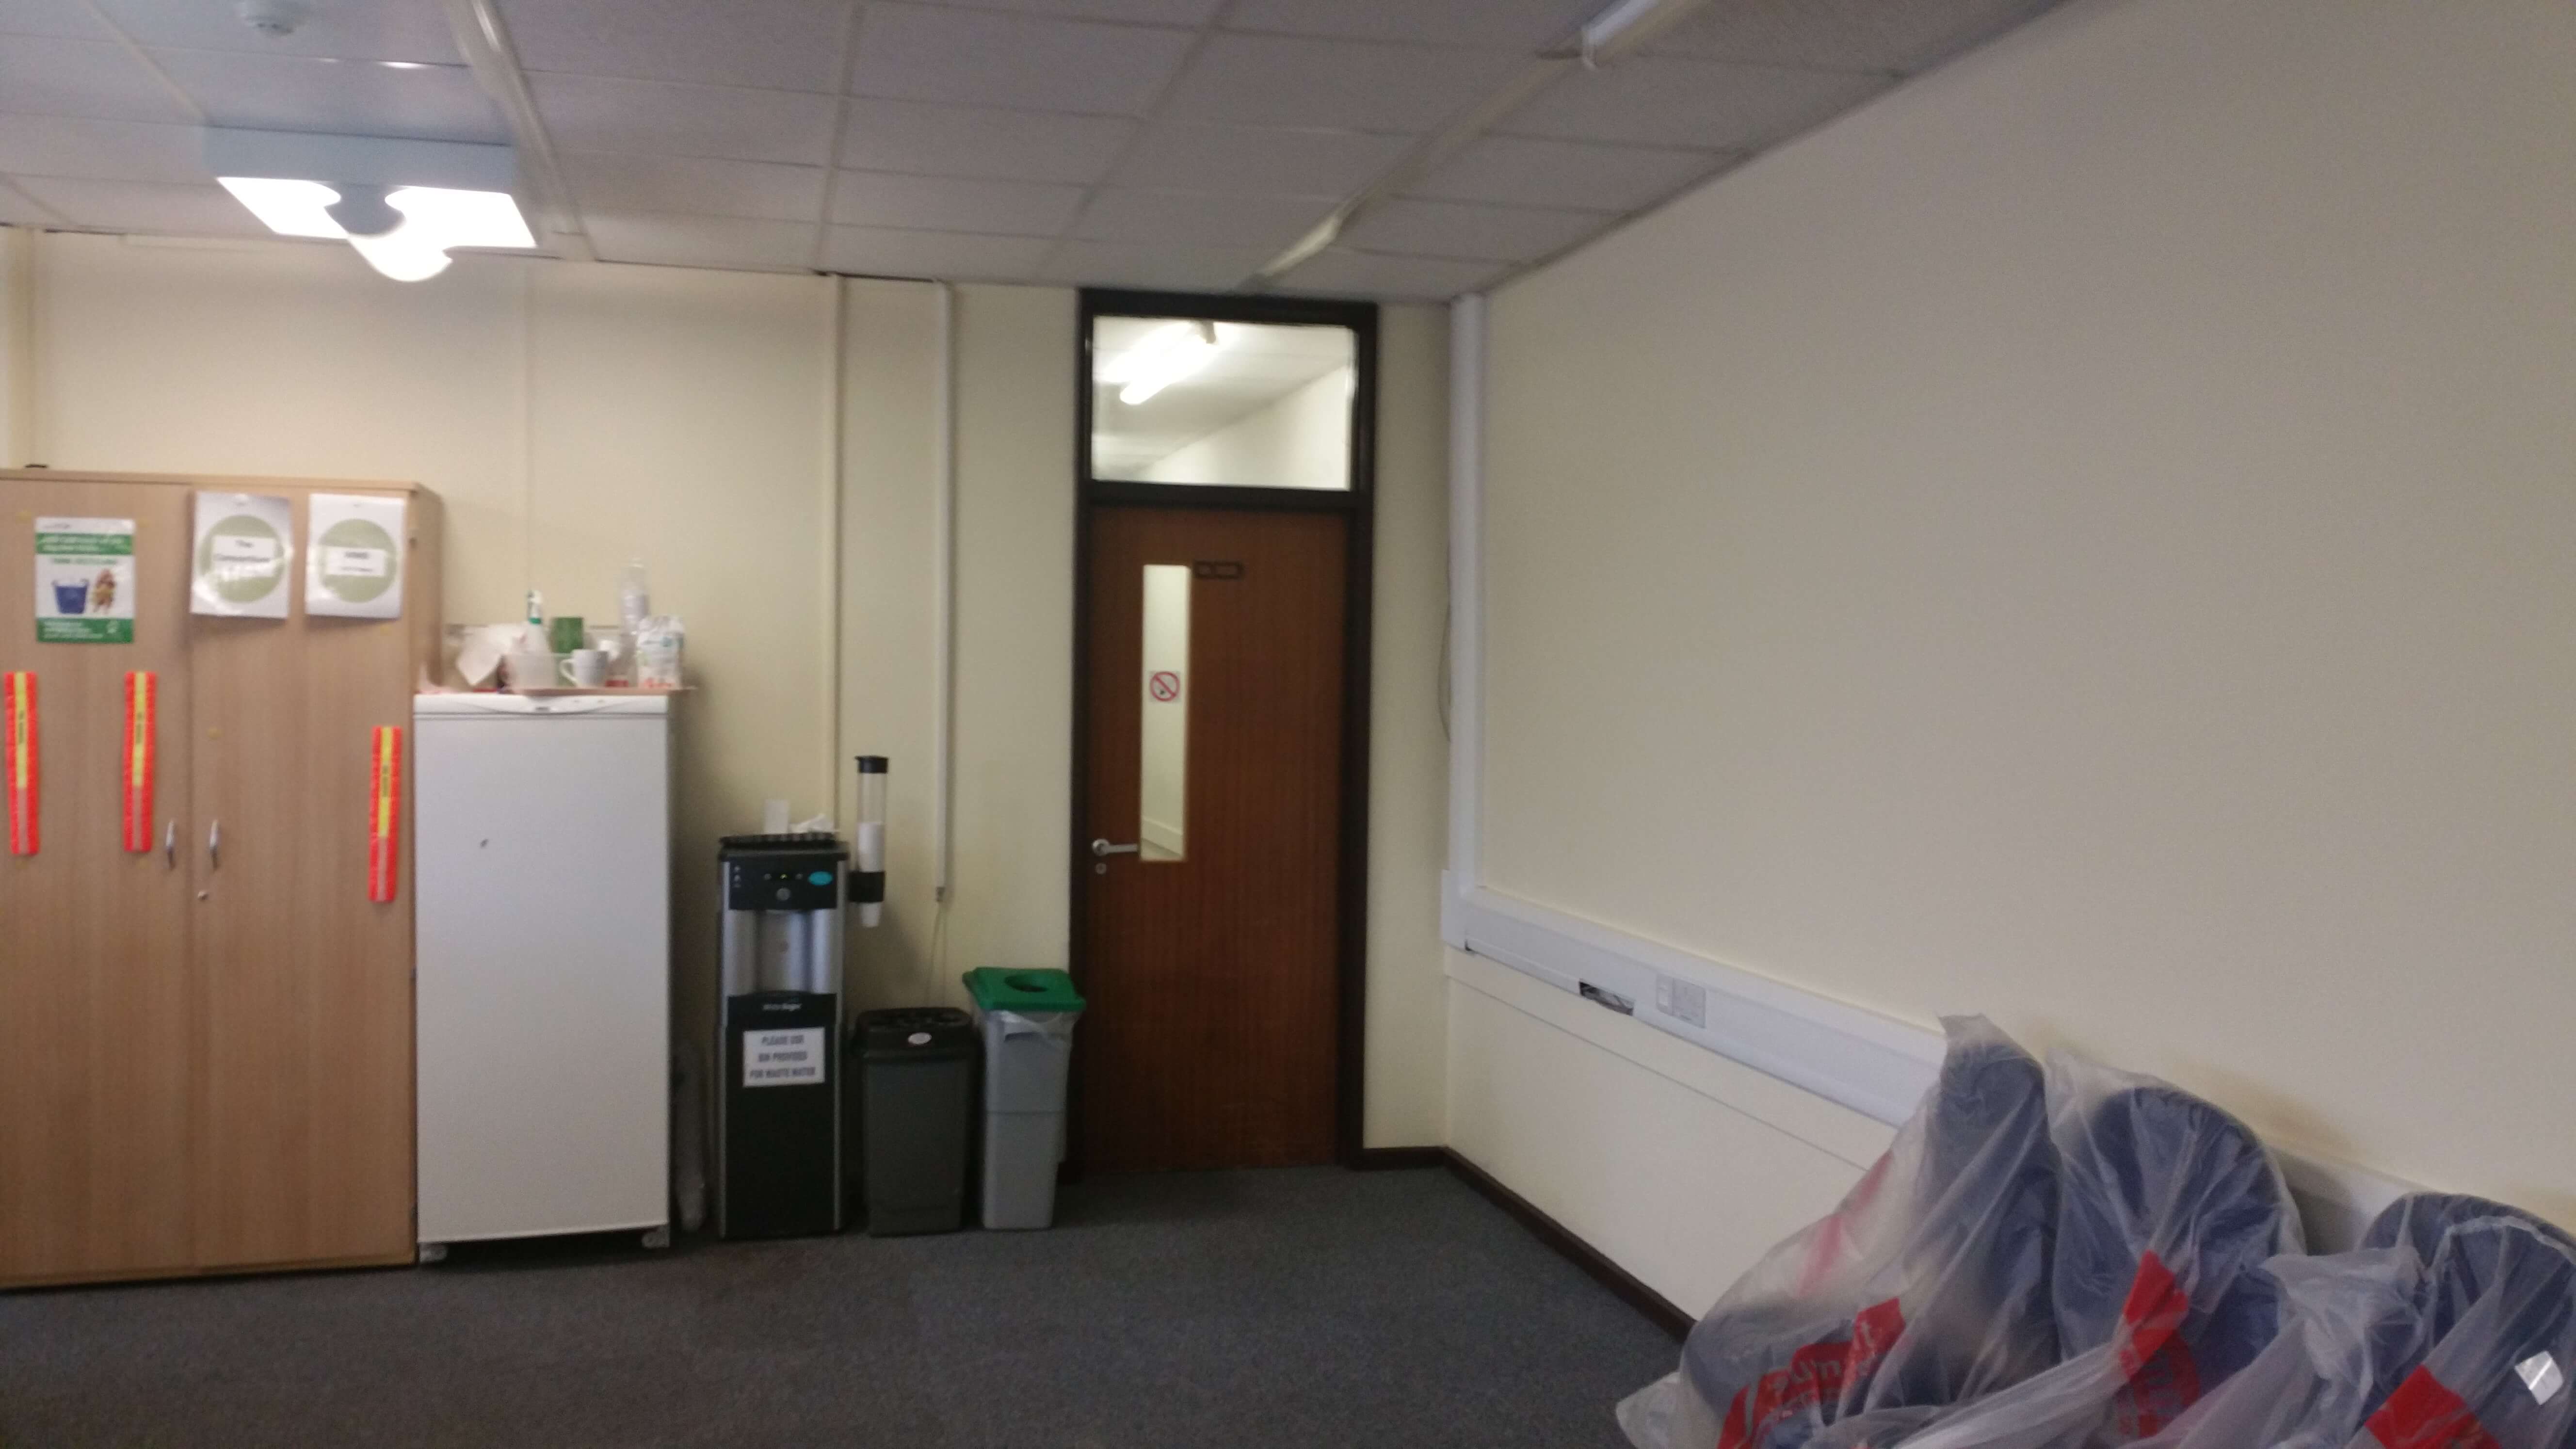 Office refurbishment for The Consortium Trowbridge